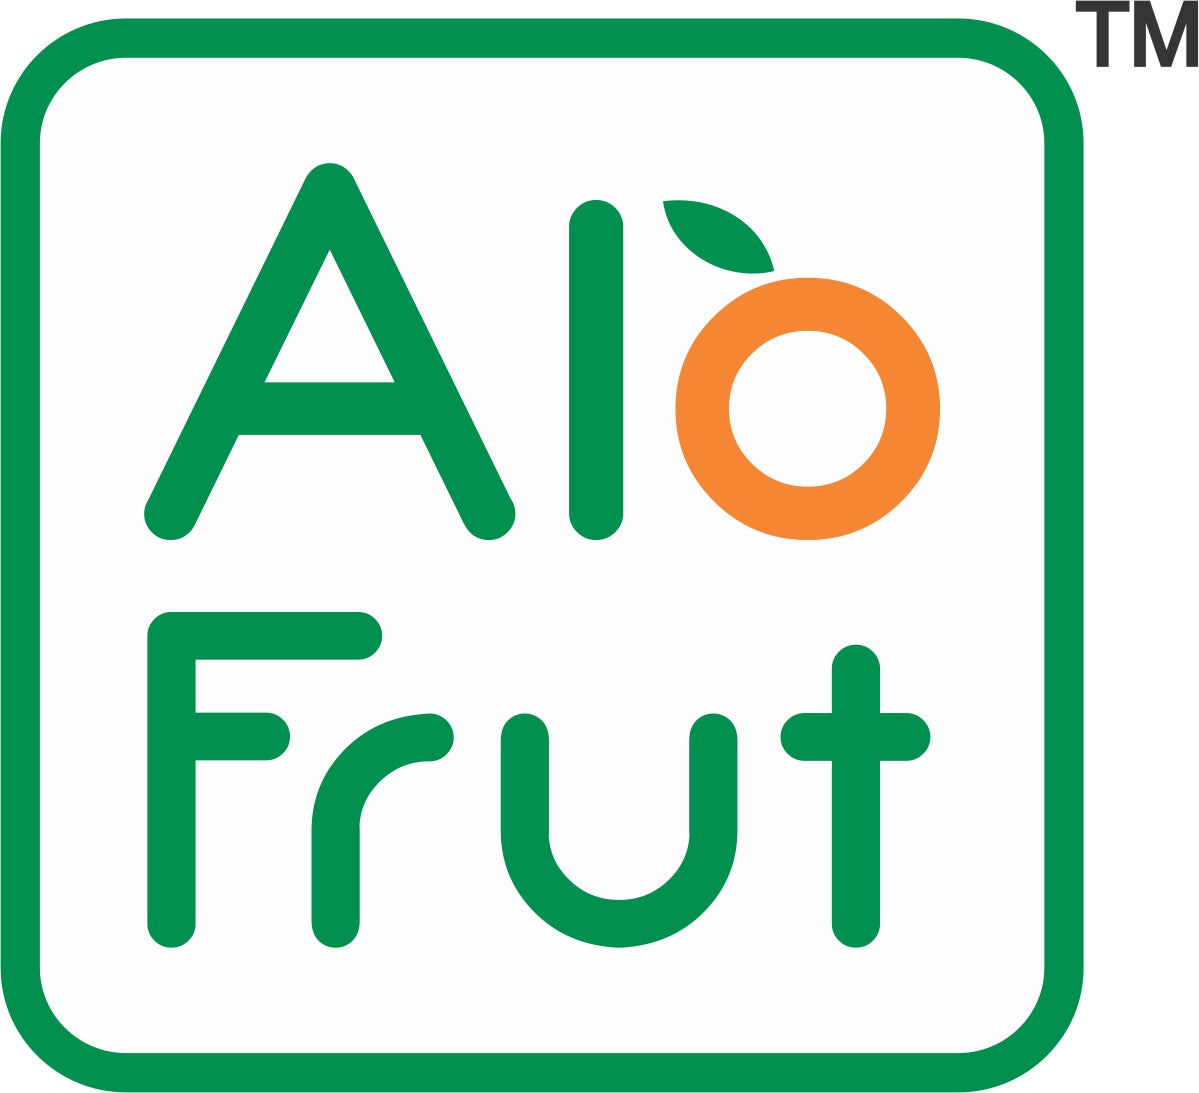 Alo Frut Mixed Fruit Aloevera Chunks & Juice 300ML (Pack of 24)